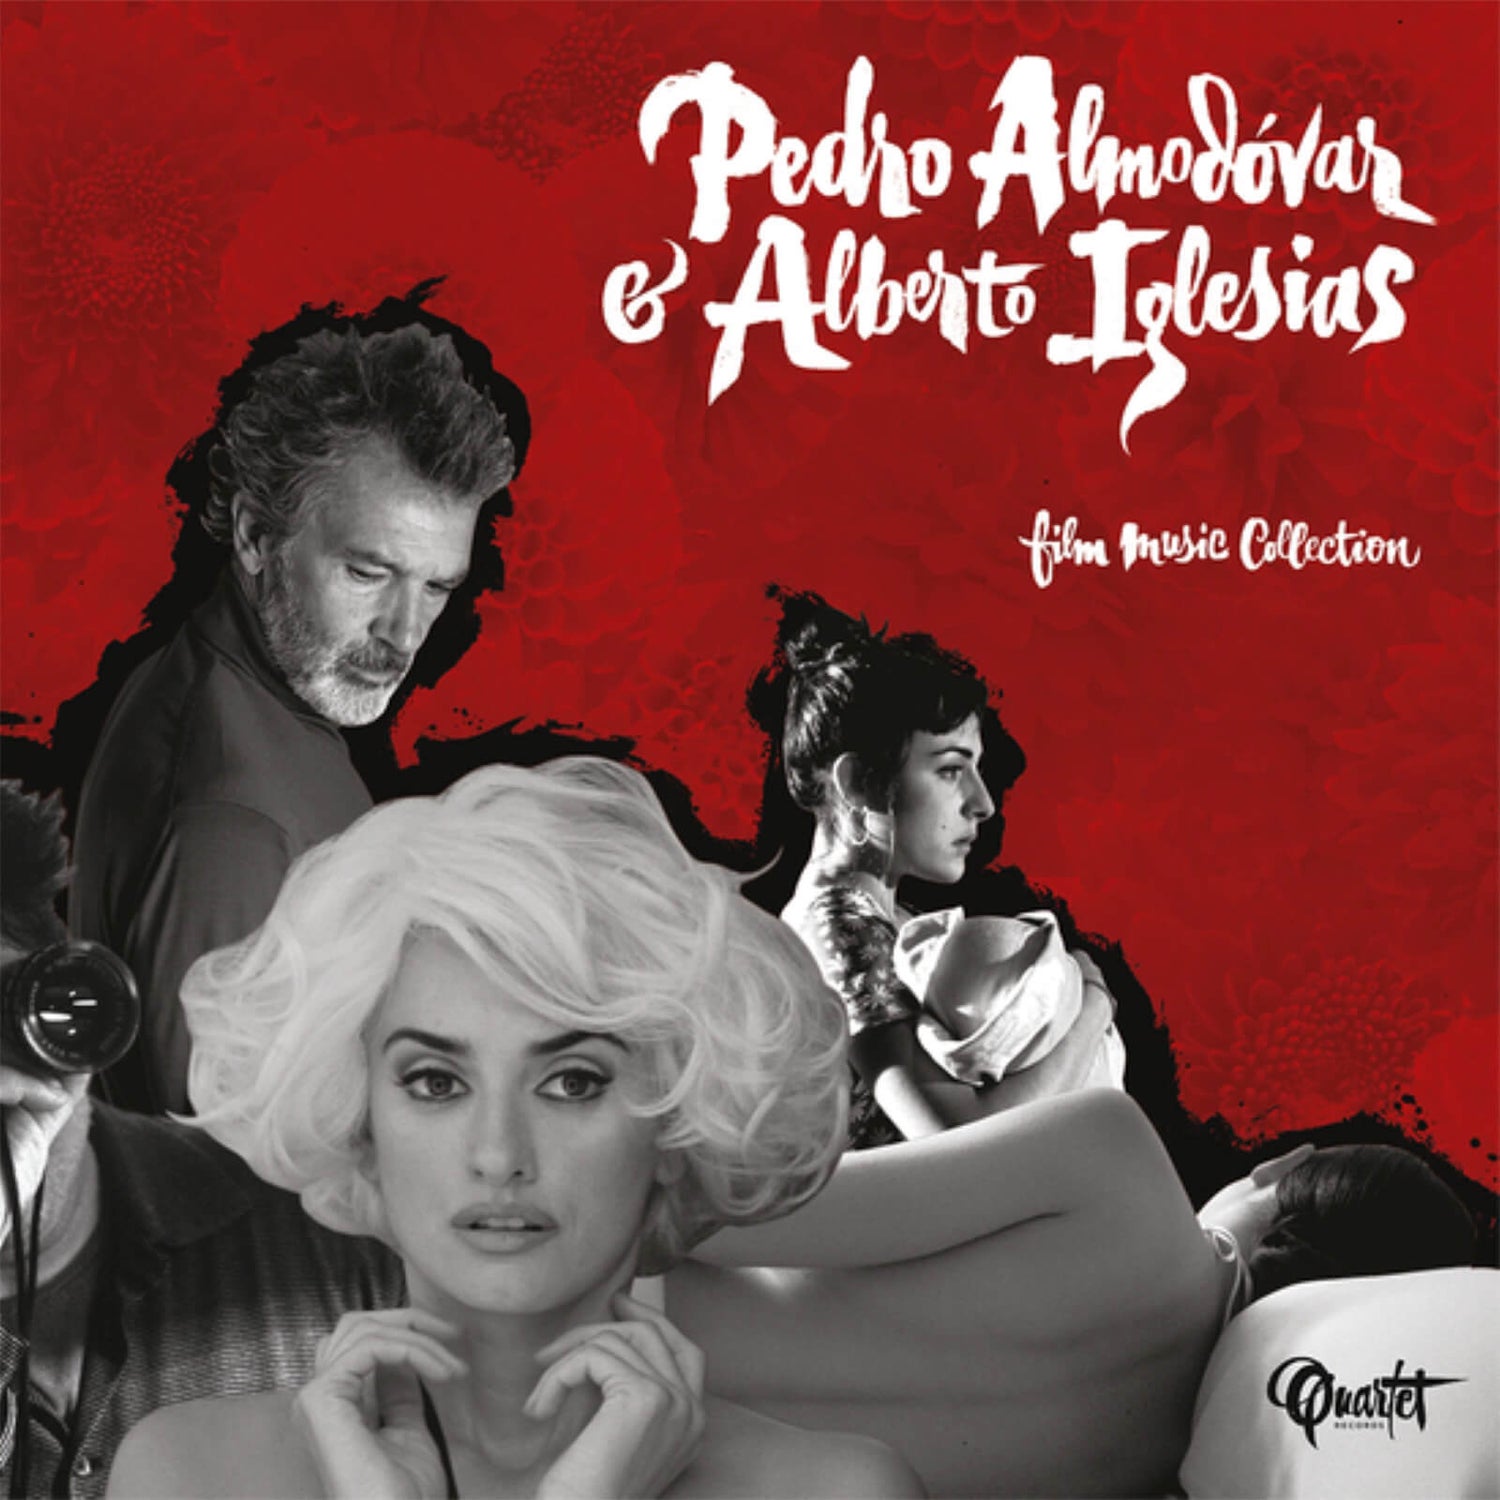 Alberto Iglesias - Almodovar and Iglesias: Film Music Collection 180g Vinyl